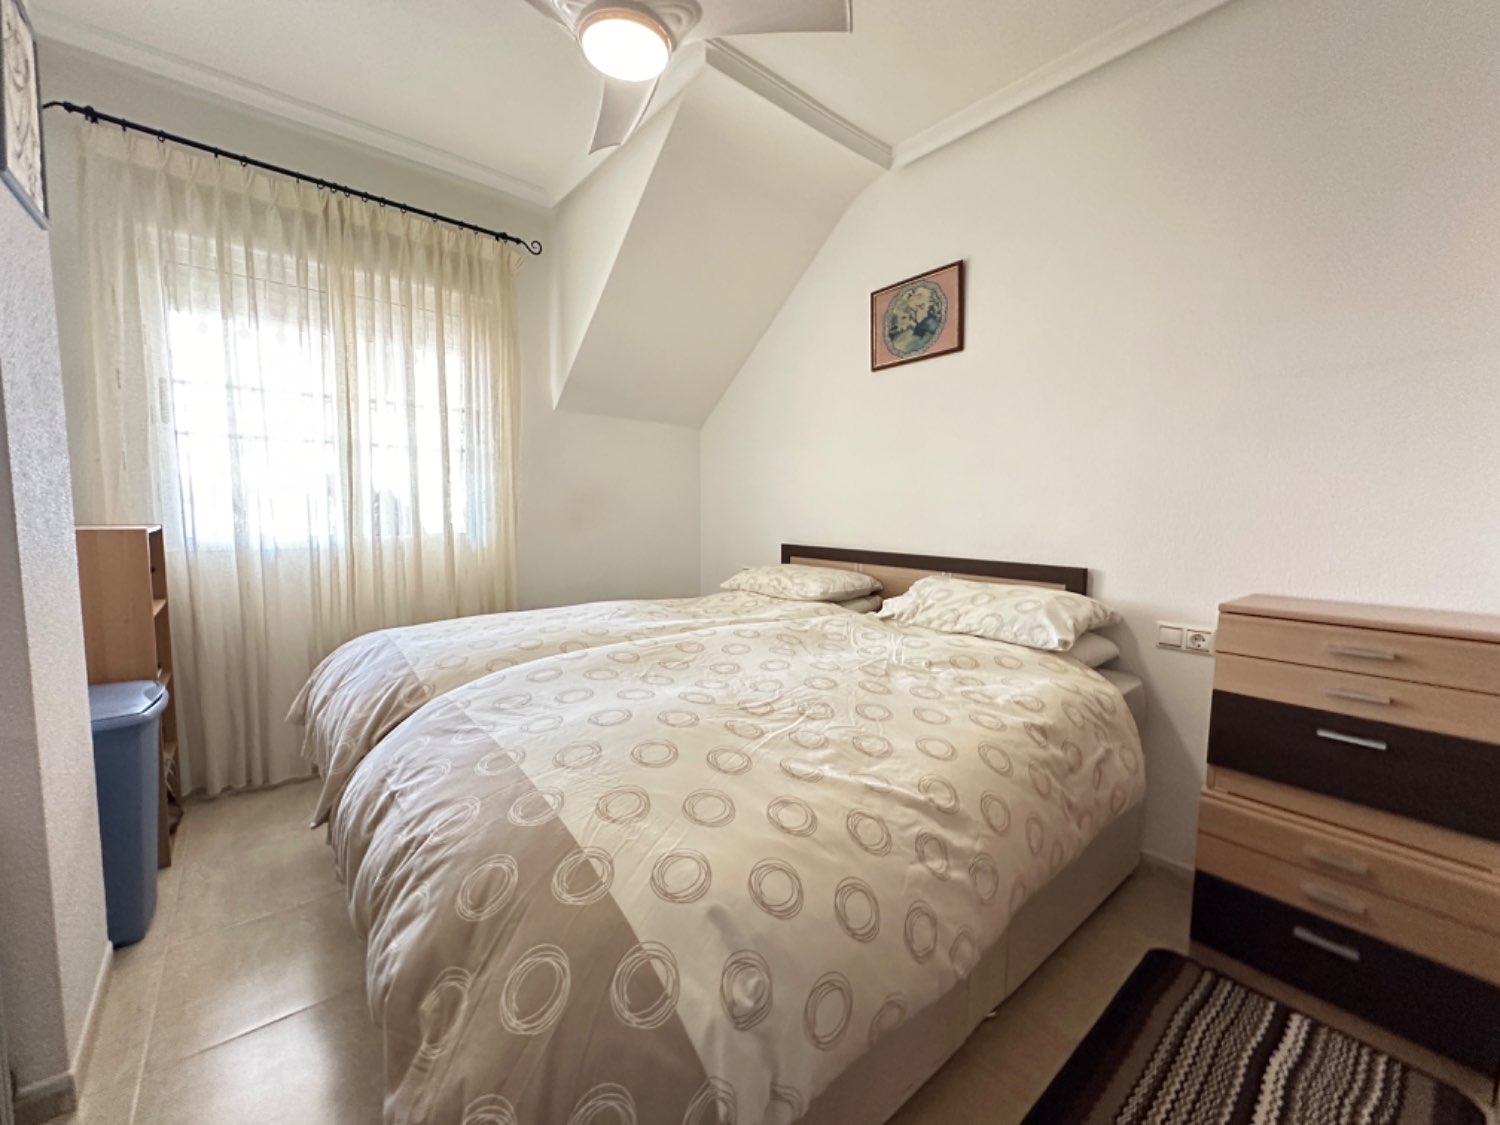 Apartamento en planta alta esquina situado en Los Altos de Orihuela Costa 2 dormitorios en perfectas condicones